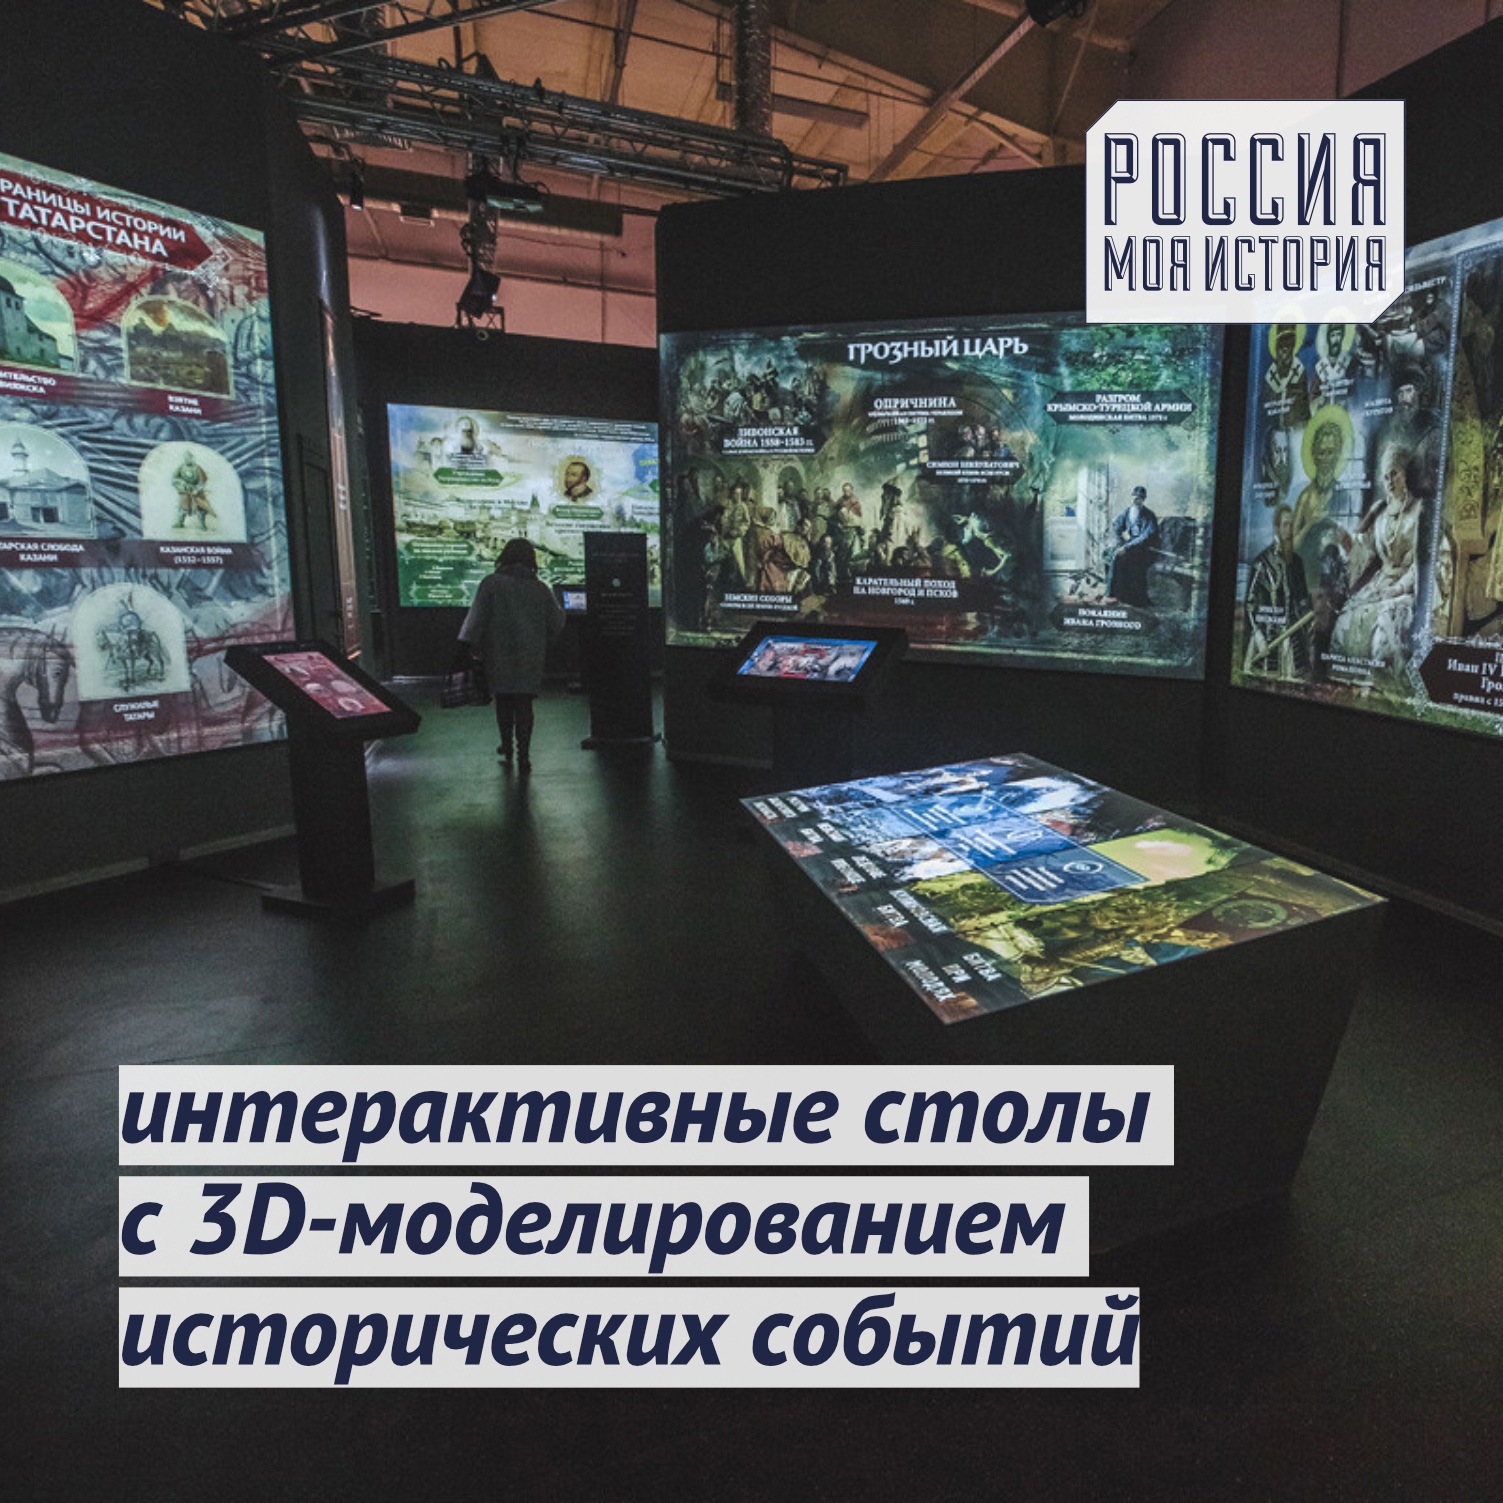 Музей россия моя история тверь фото